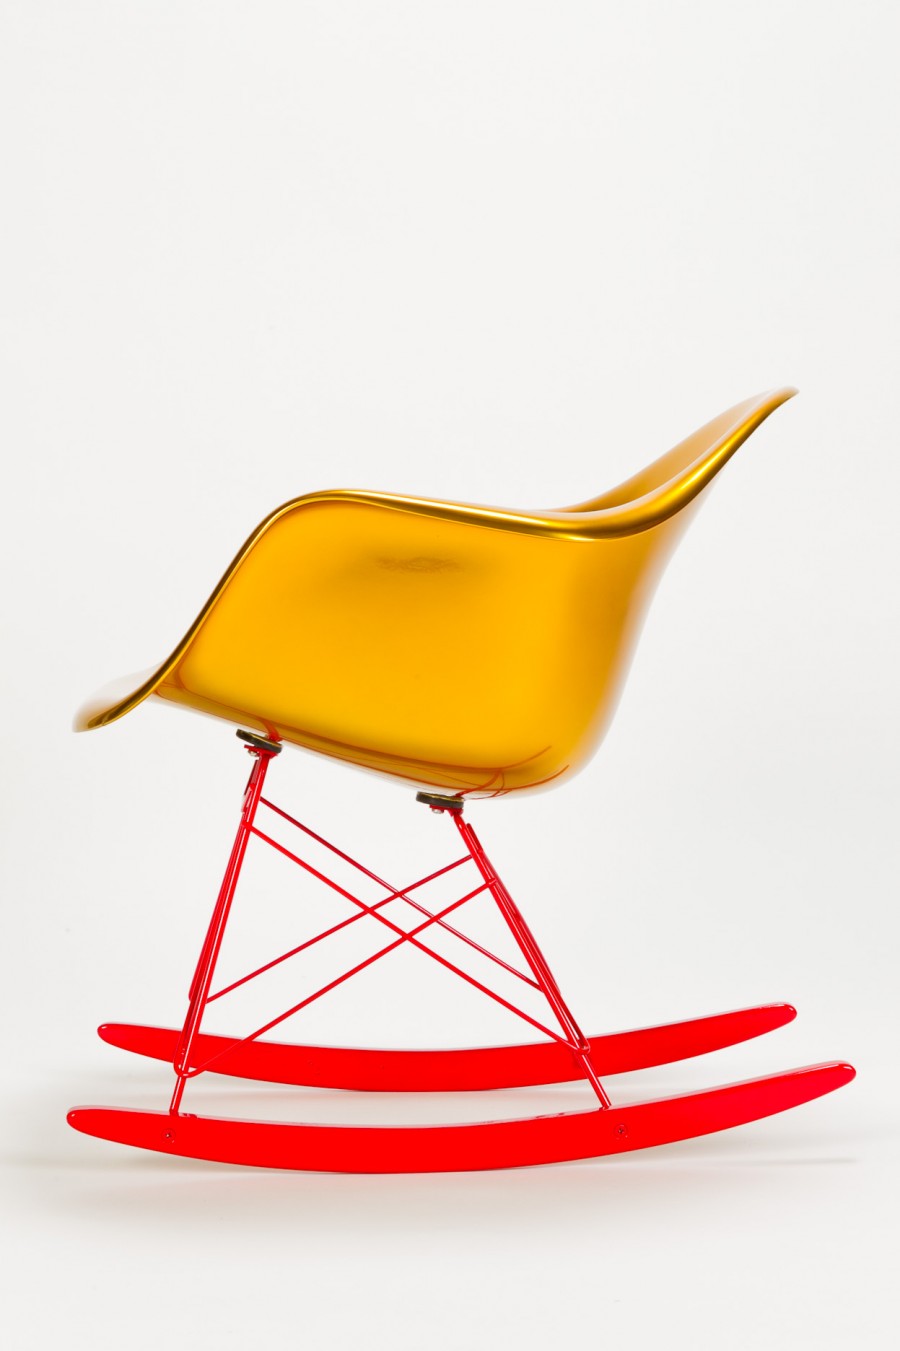 Goldener Schauckelstuhl von Charles & Ray Eames/Reha Okay